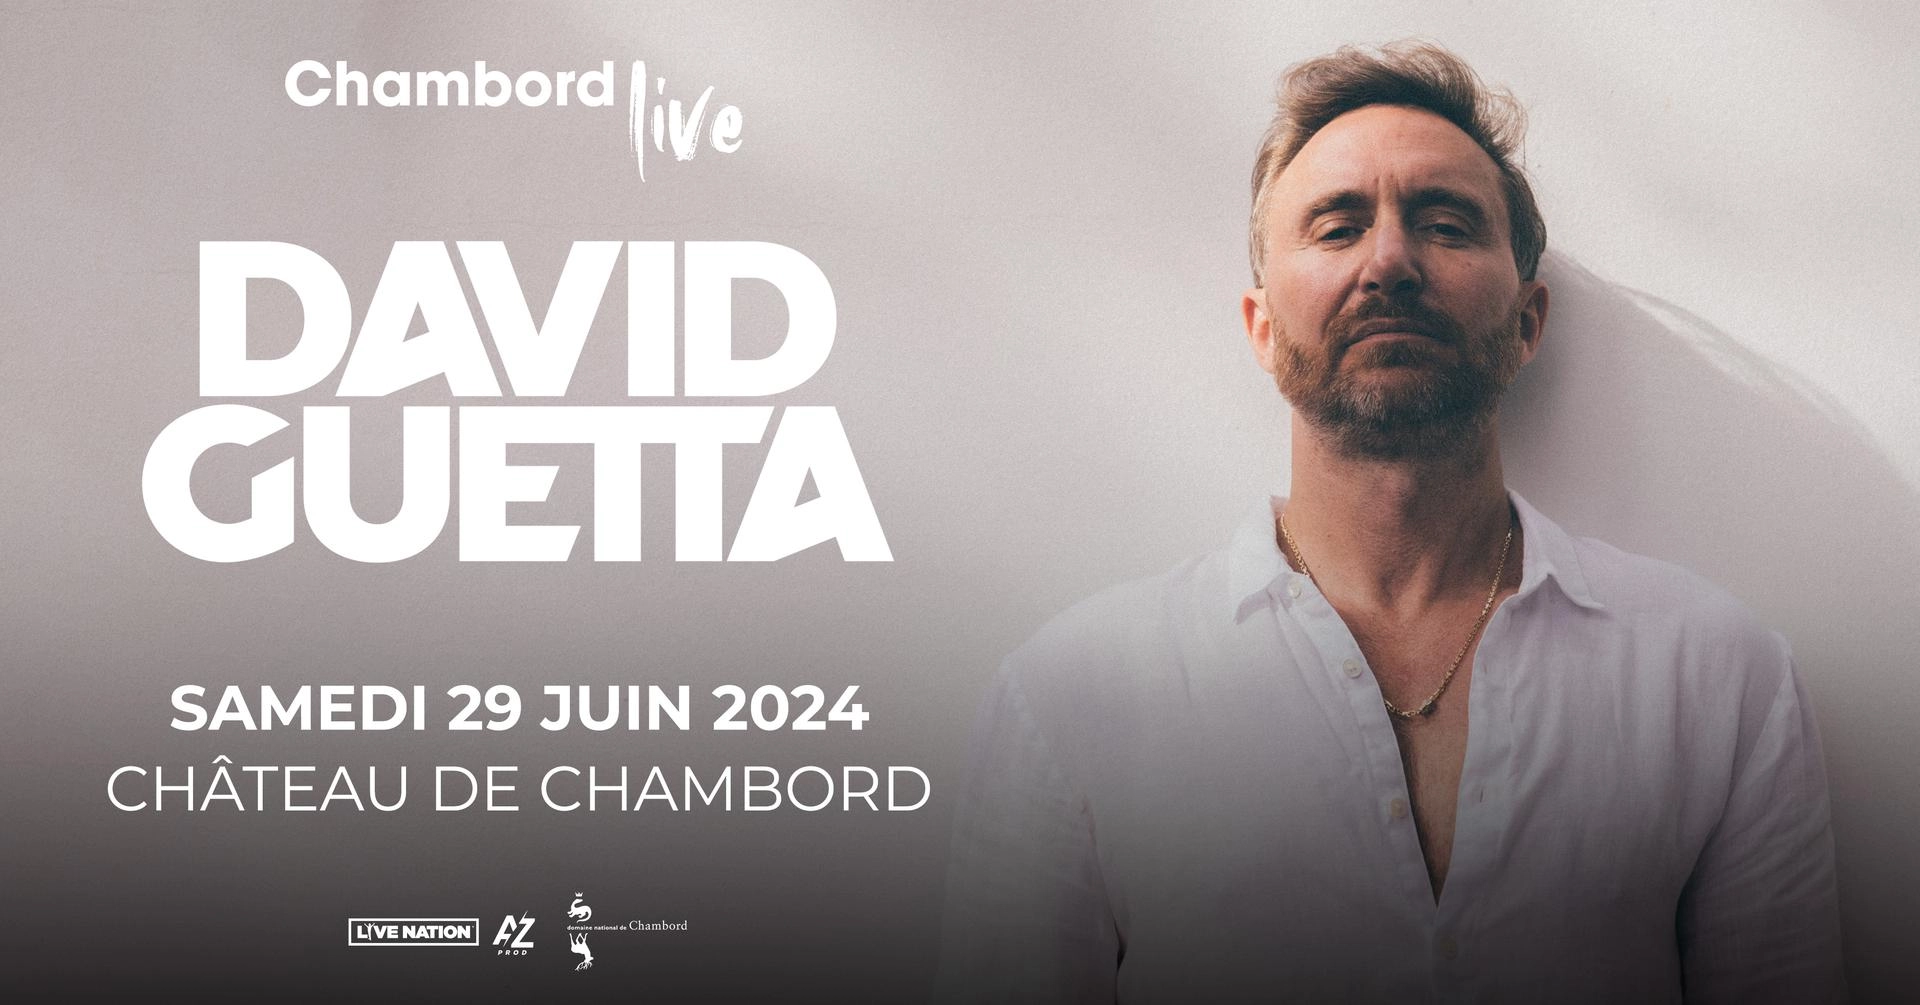 David Guetta - Chambord Live 2024 at Chateau de Chambord Tickets